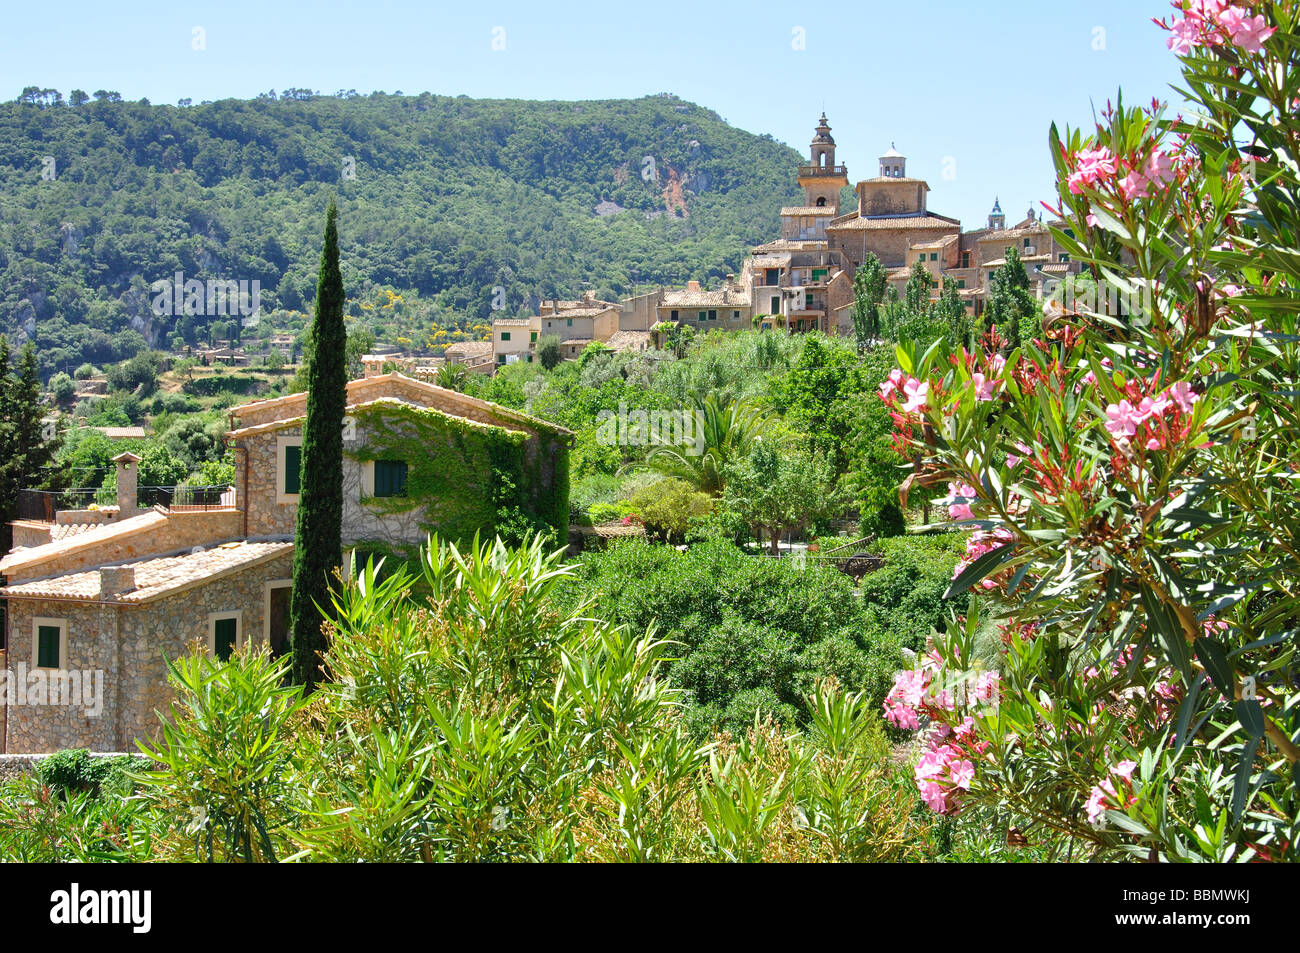 Hilltop village of Valldemossa, Valldemossa Municipality, Mallorca, Balearic Islands, Spain Stock Photo